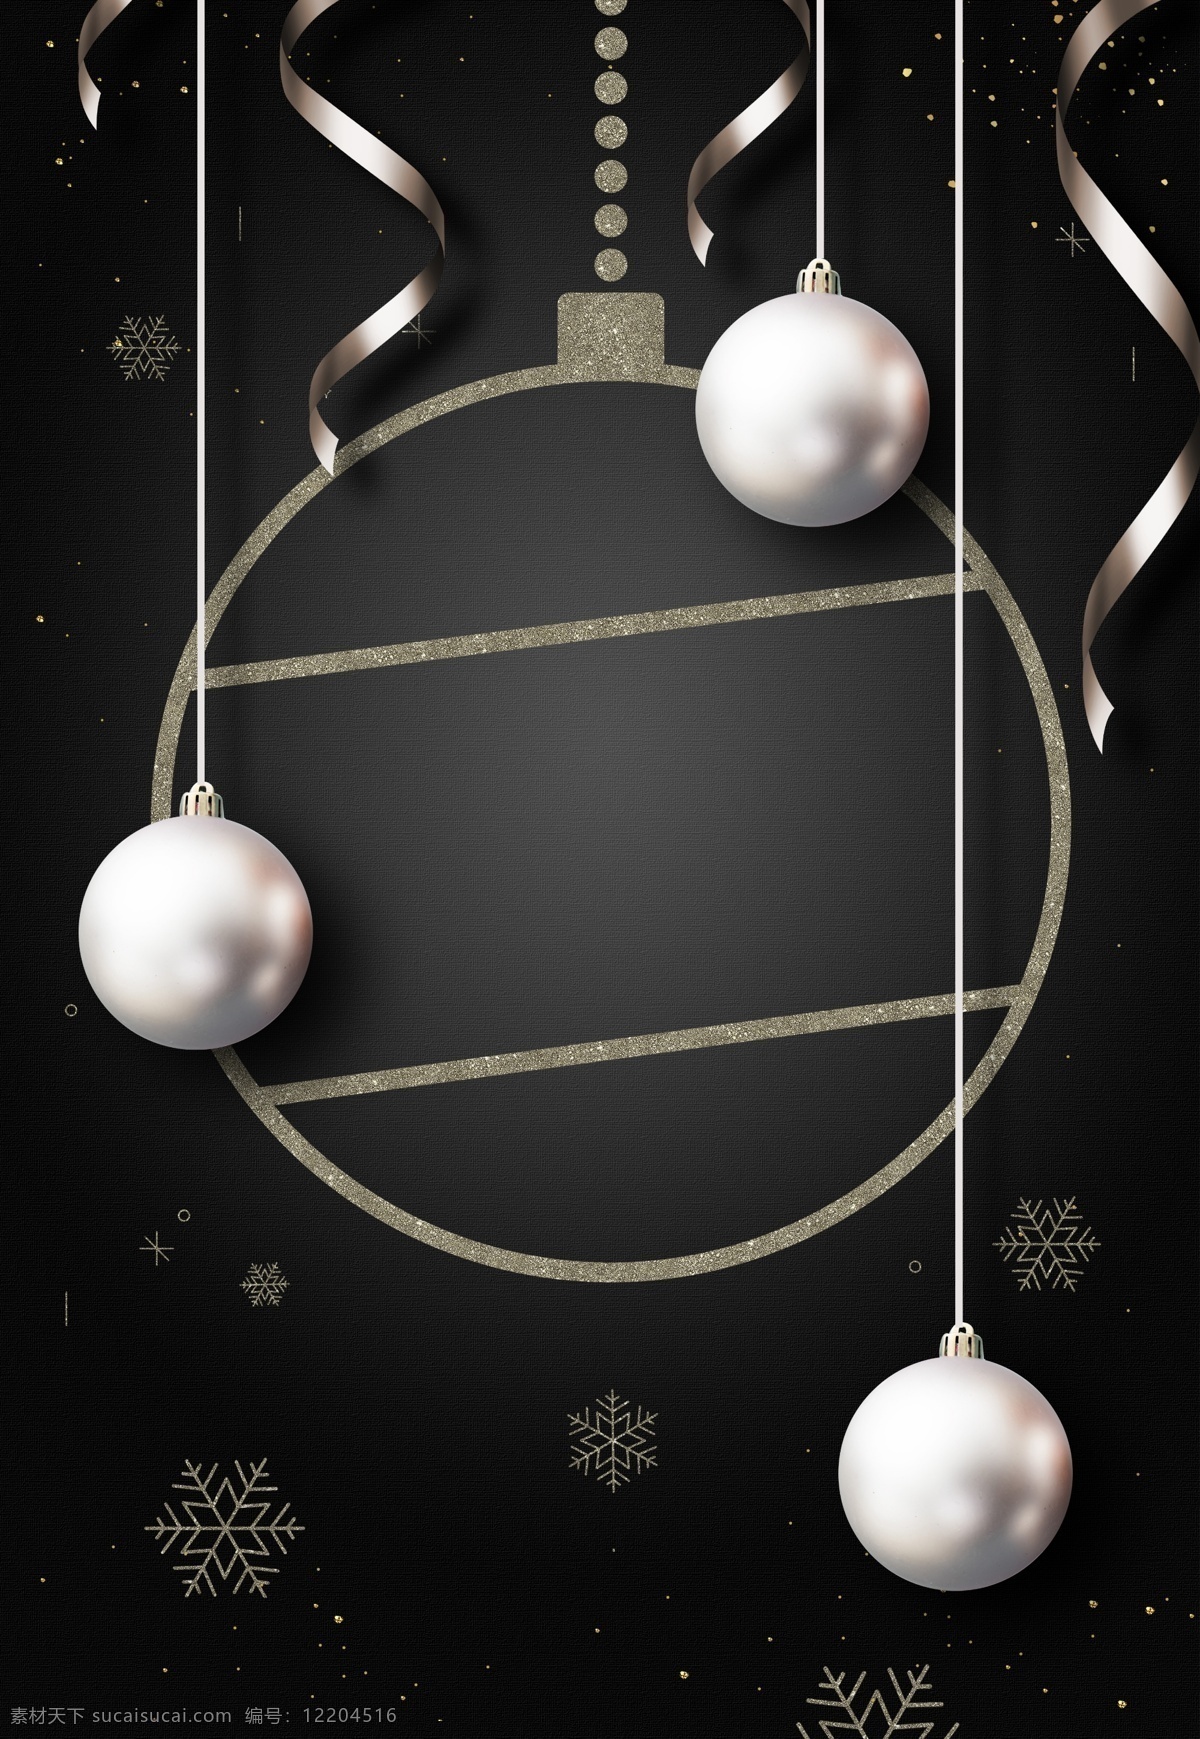 黑 银色 圣诞球 装饰 背景 圣诞节 圣诞背景 背景设计 广告背景 黑色背景 2019圣诞 新年背景 节日背景 促销 圣诞节dm单 银色吊球